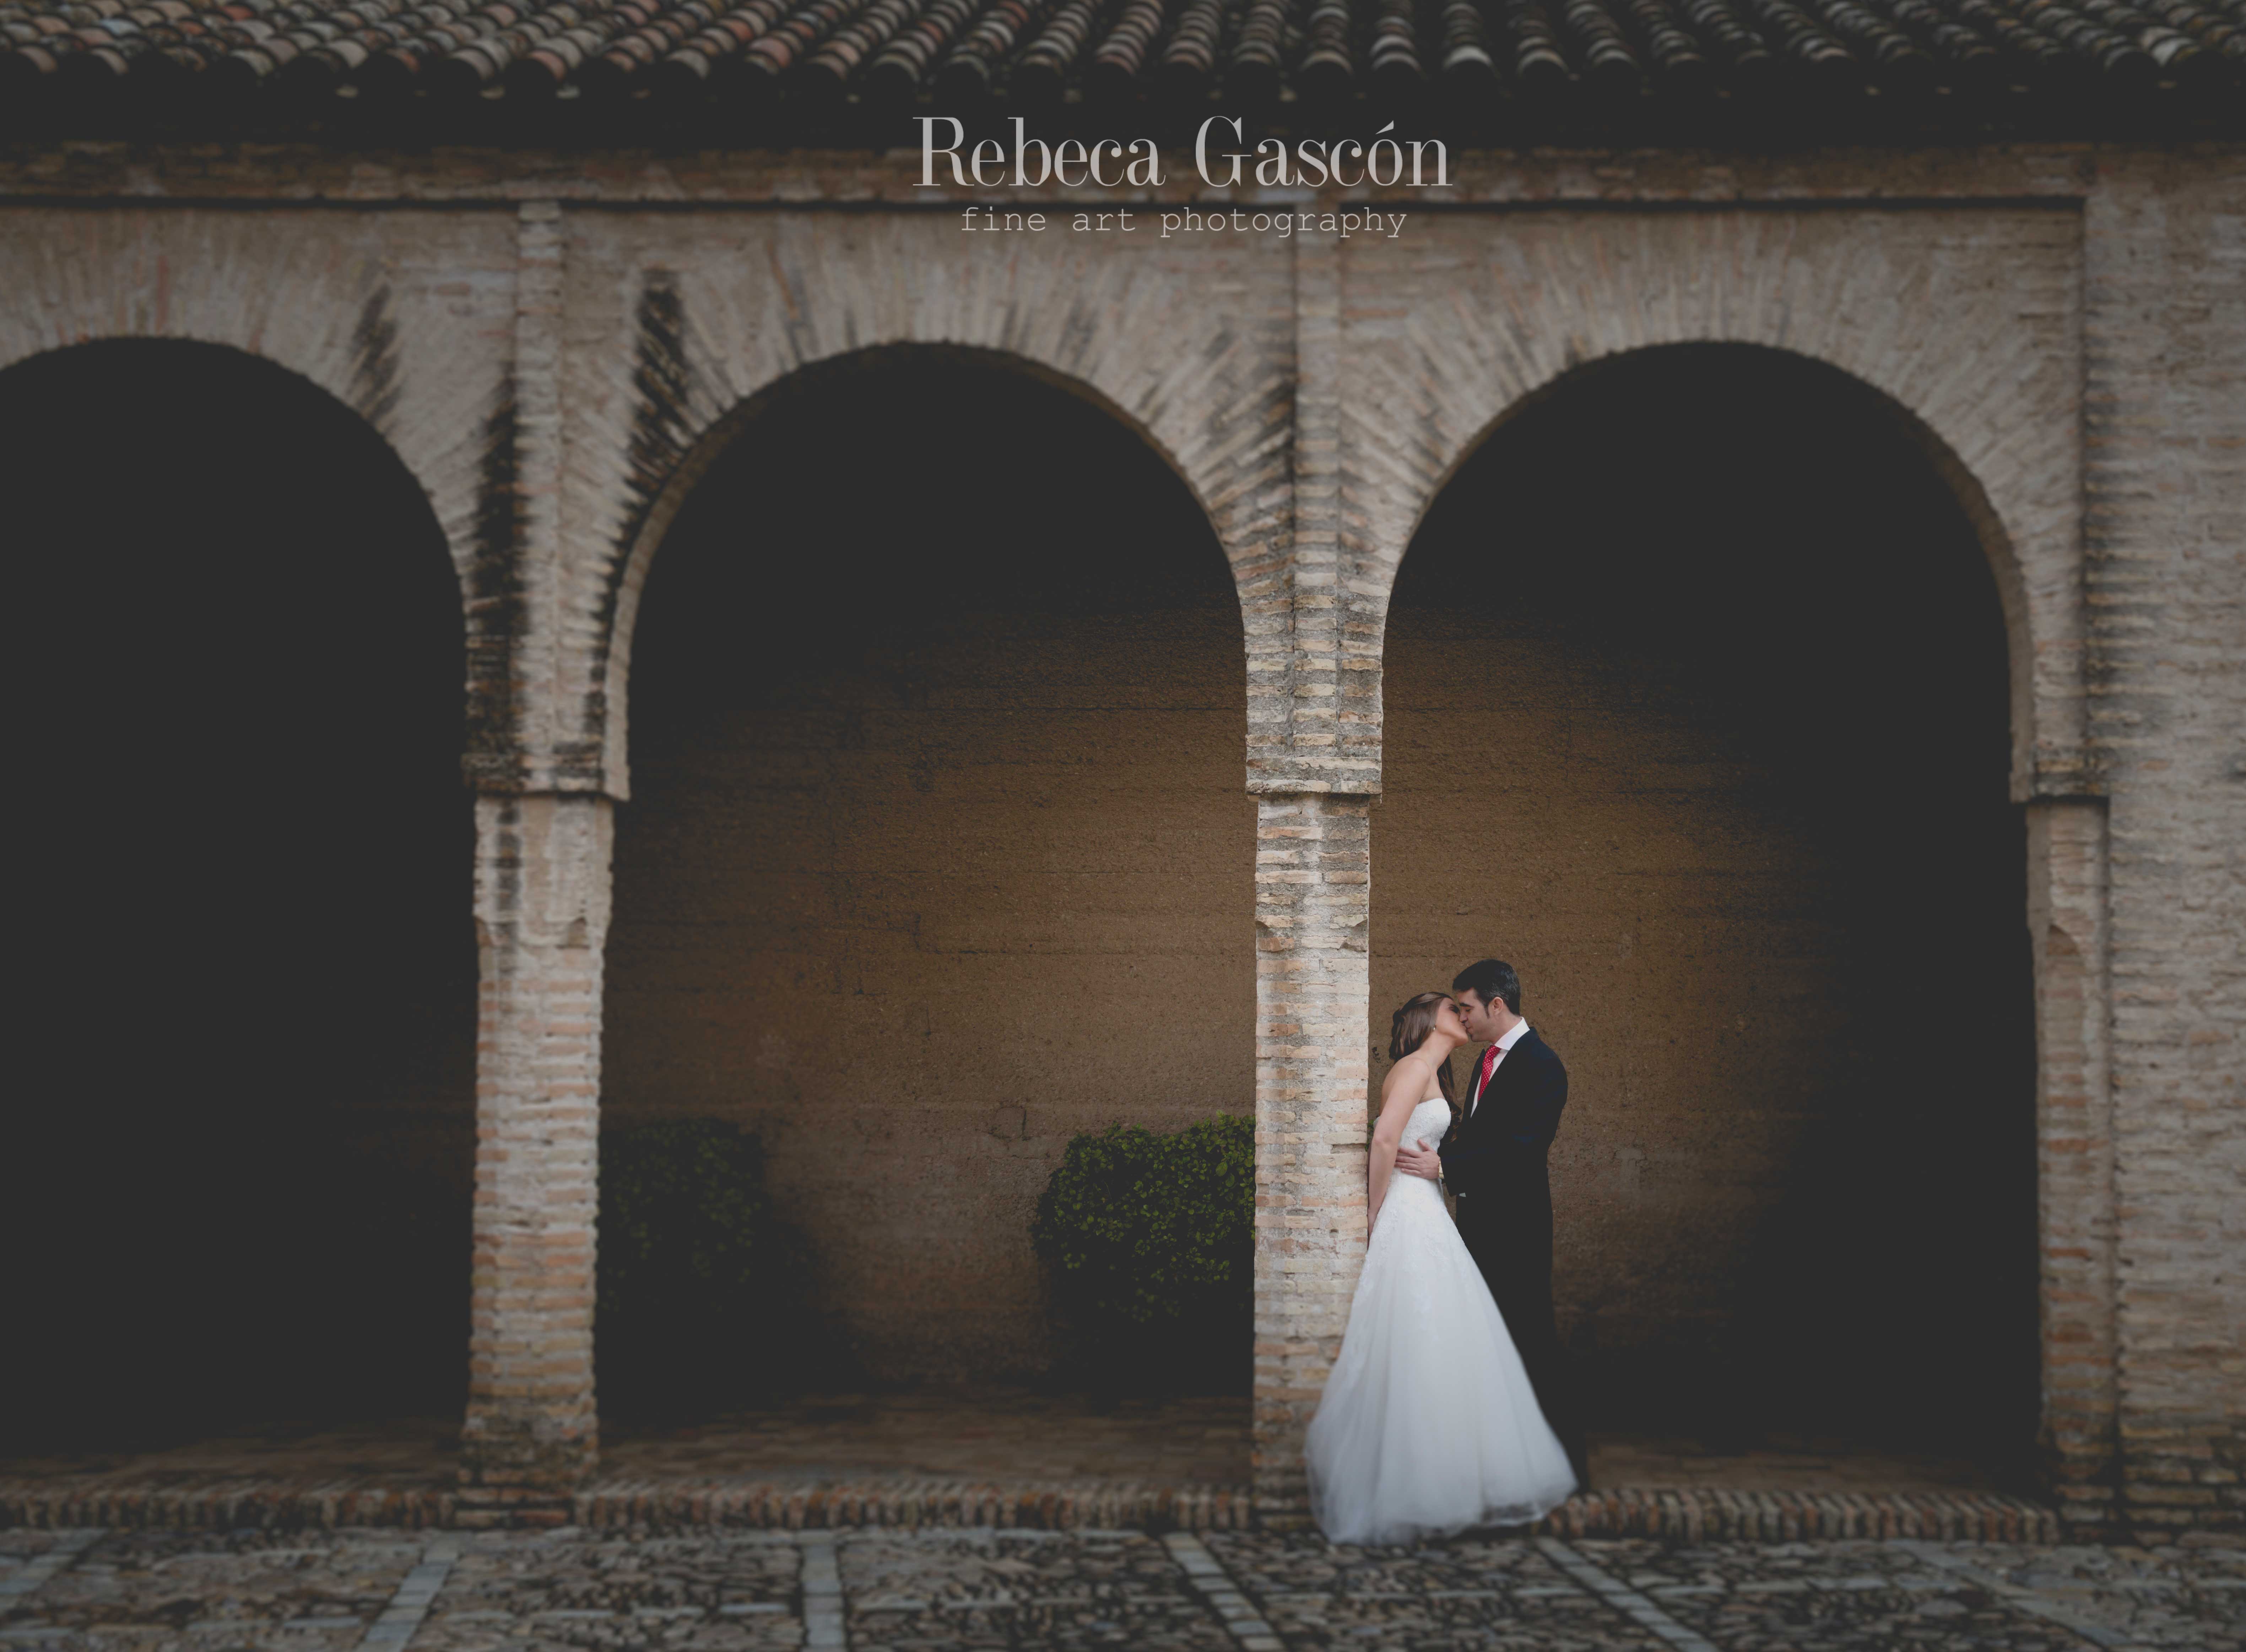 rebeca-gascon-fotografia-artistica-boda